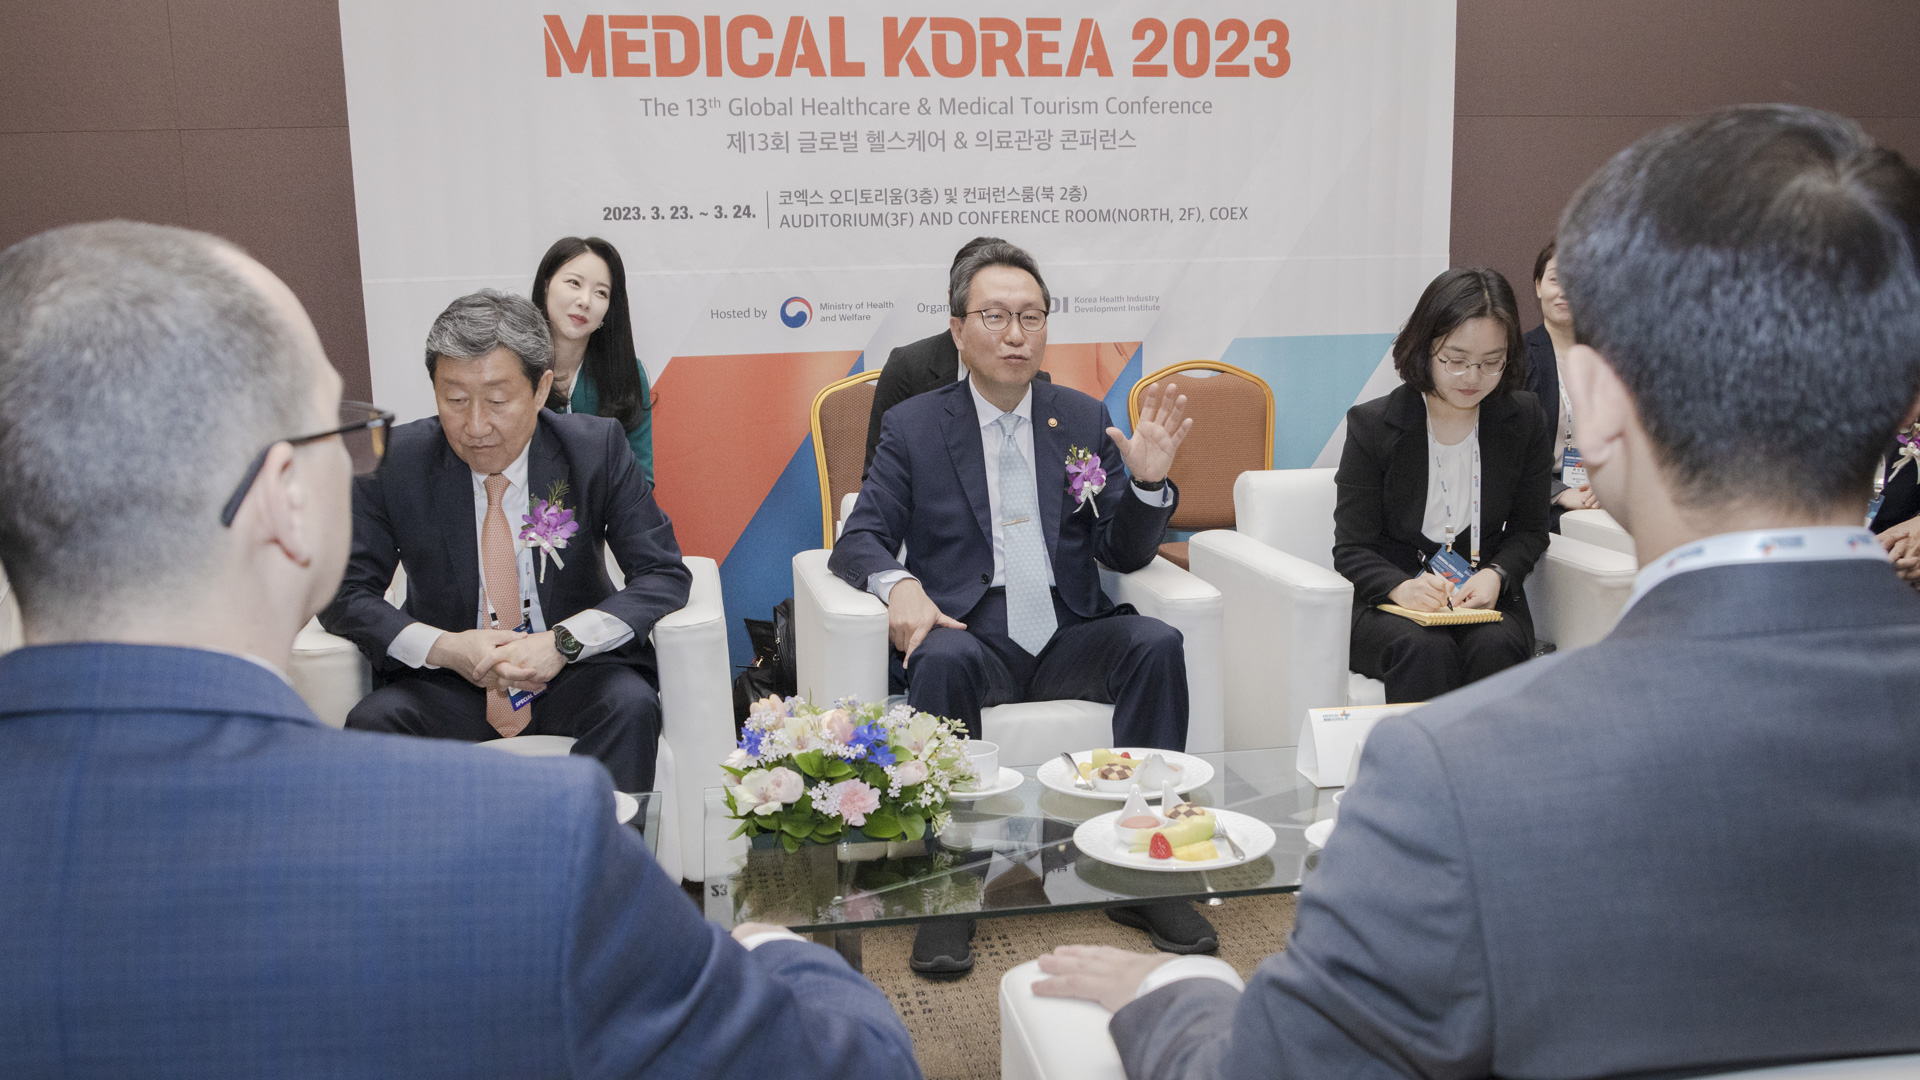 ‘더 나은 일상, 더 나은 미래를 위한 여정’ 「메디컬 코리아(Medical Korea) 2023」 사진5